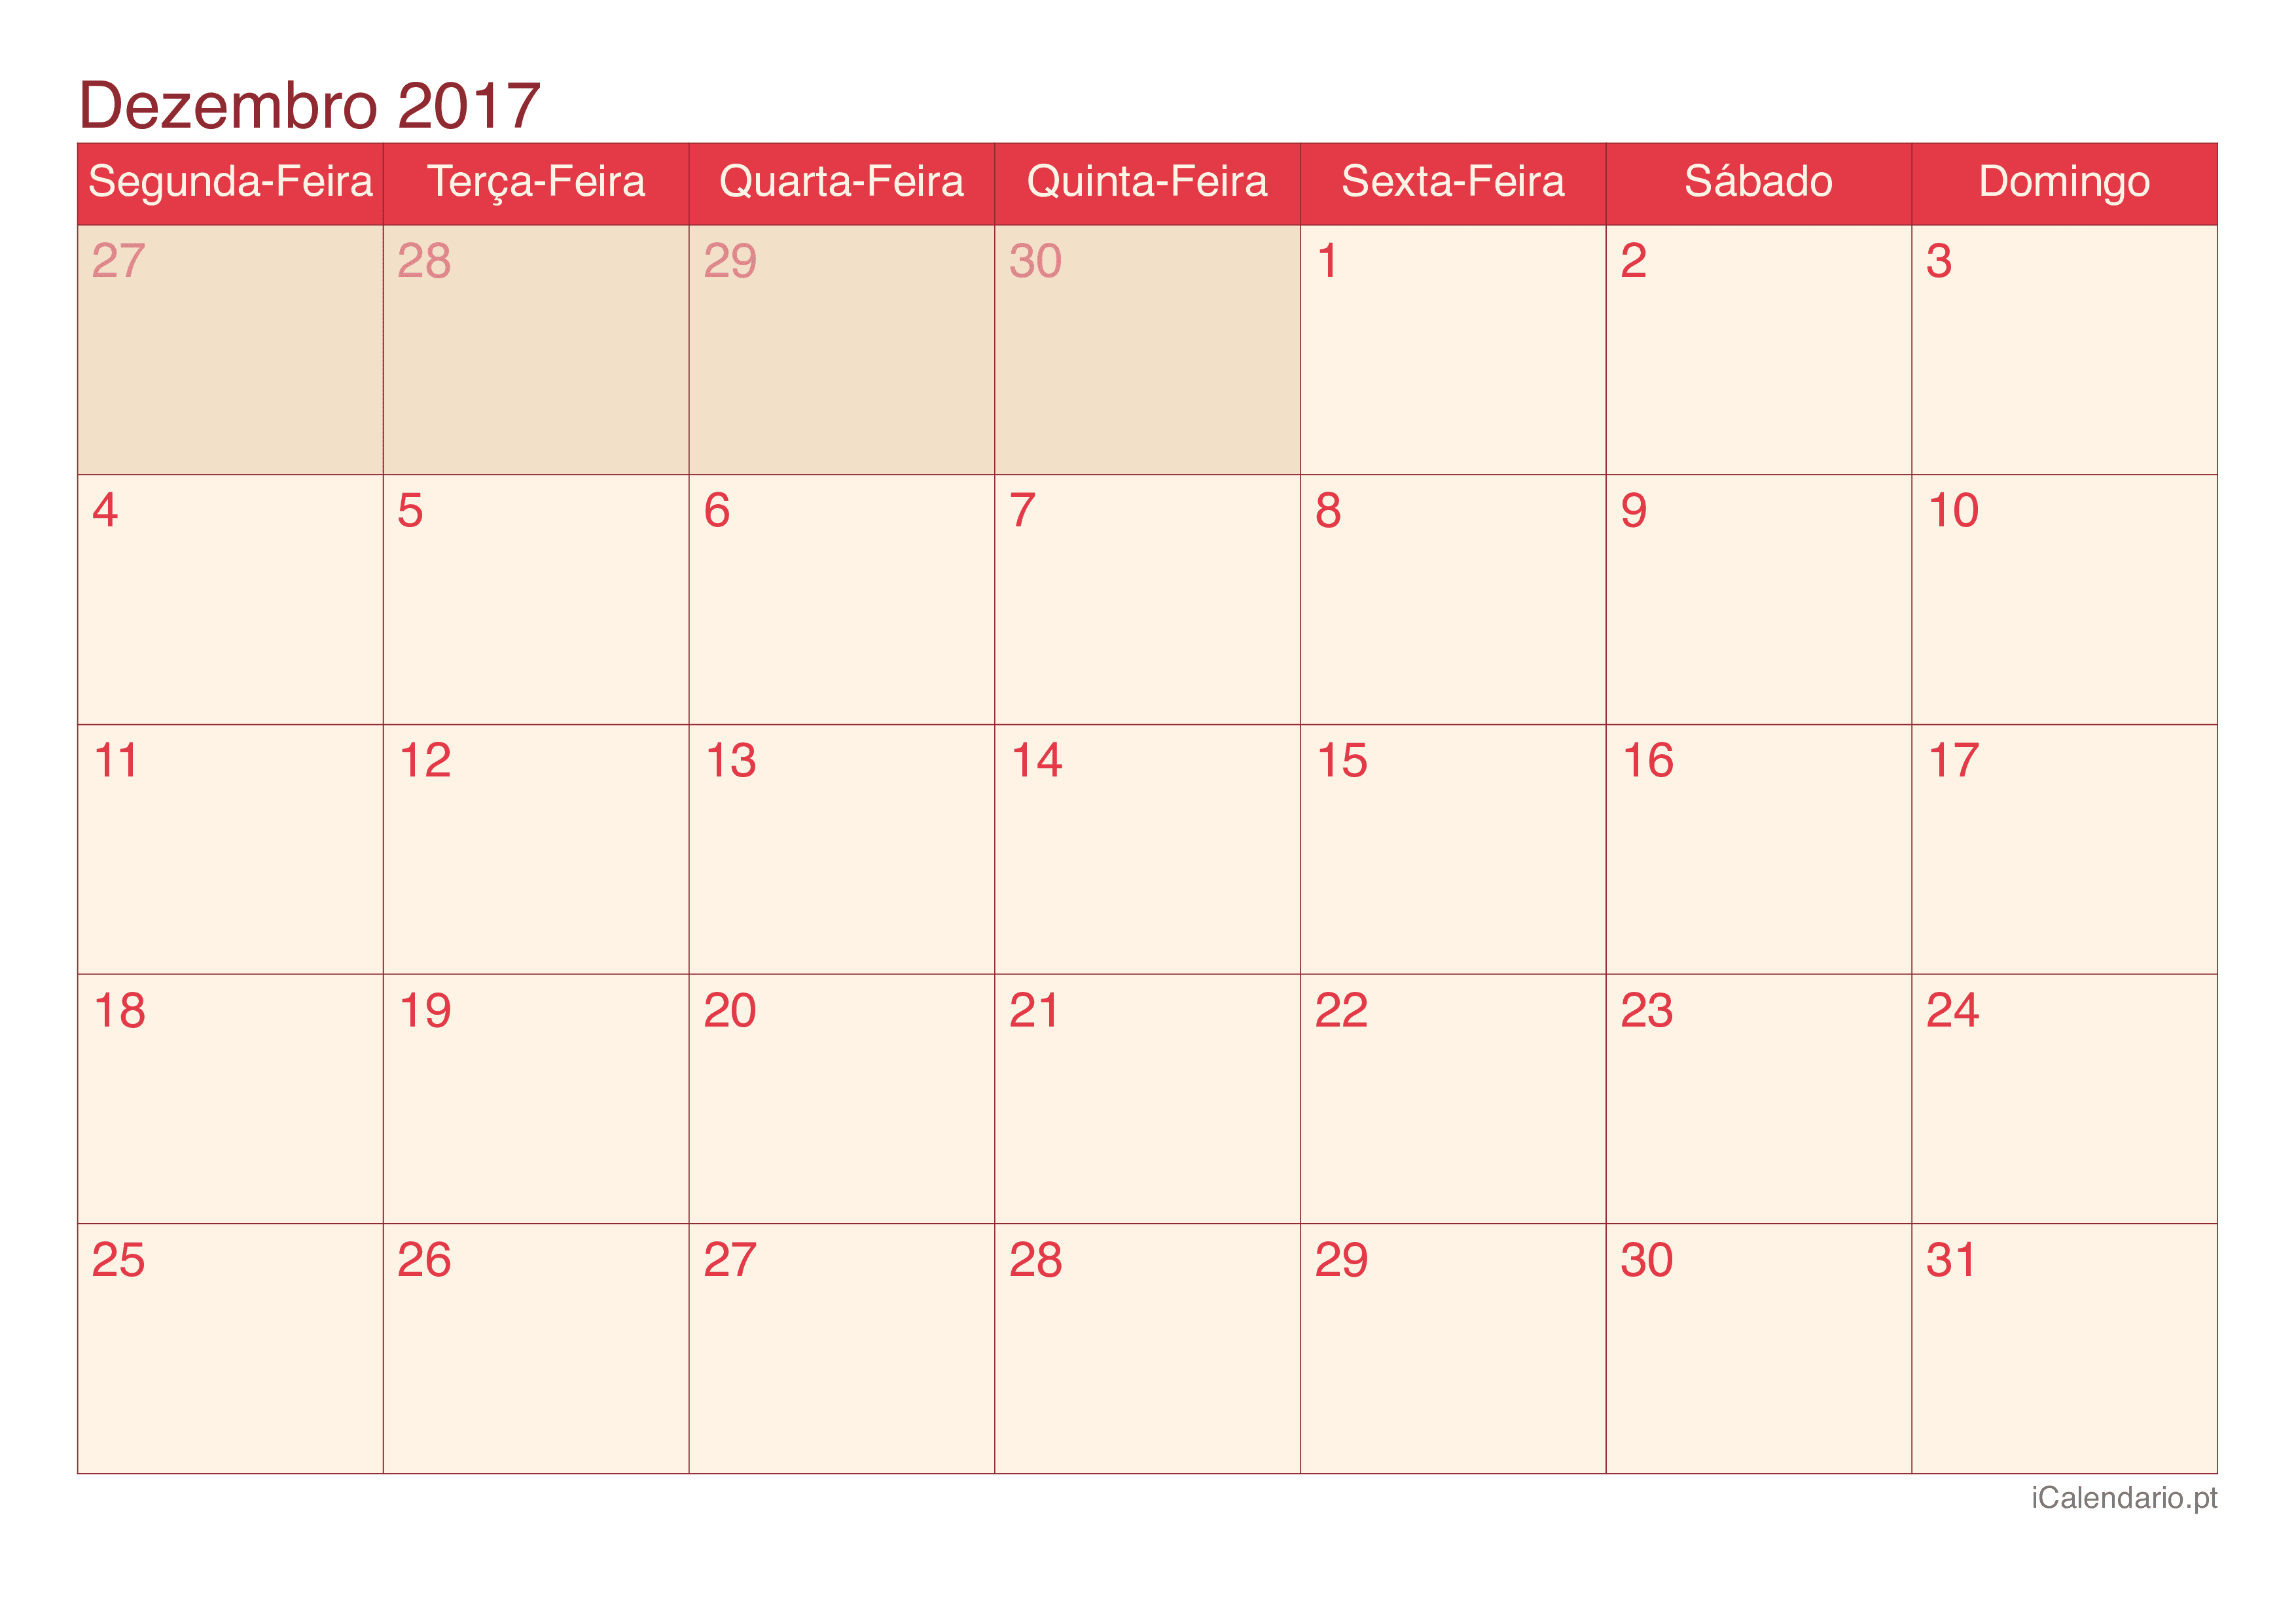 Calendário de dezembro 2017 - Cherry